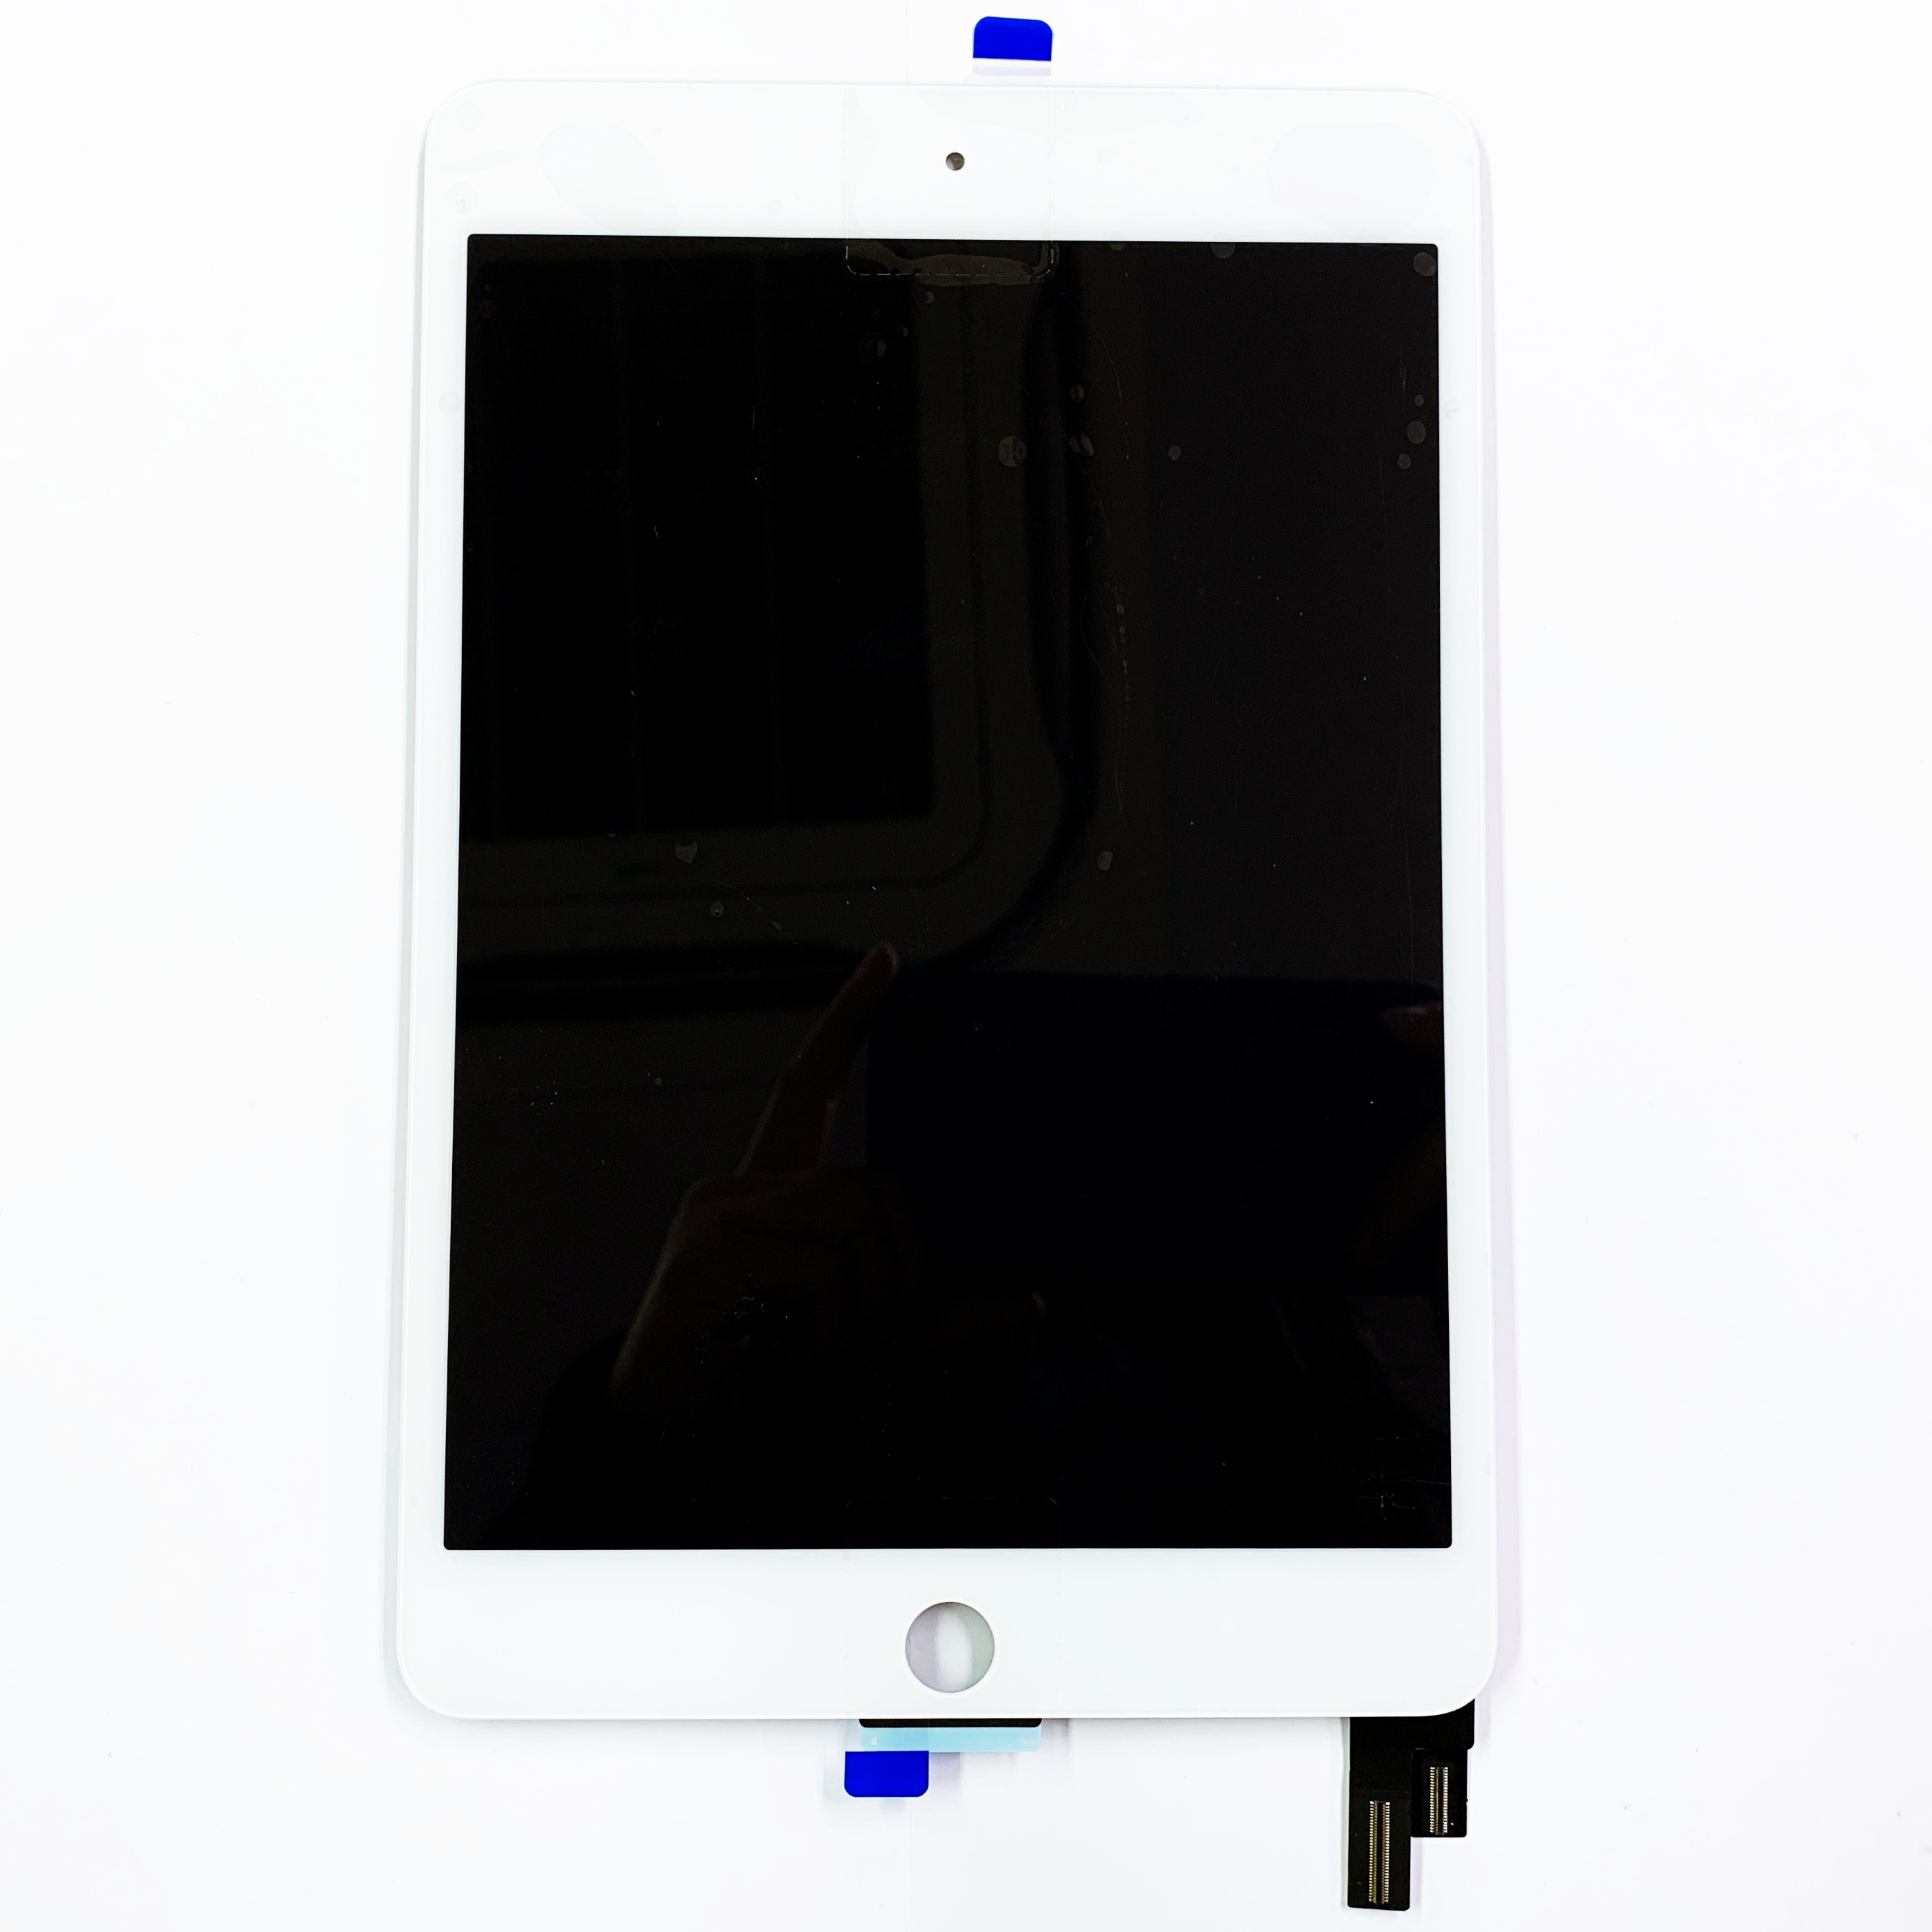 マニアックリペア / iPadパネル